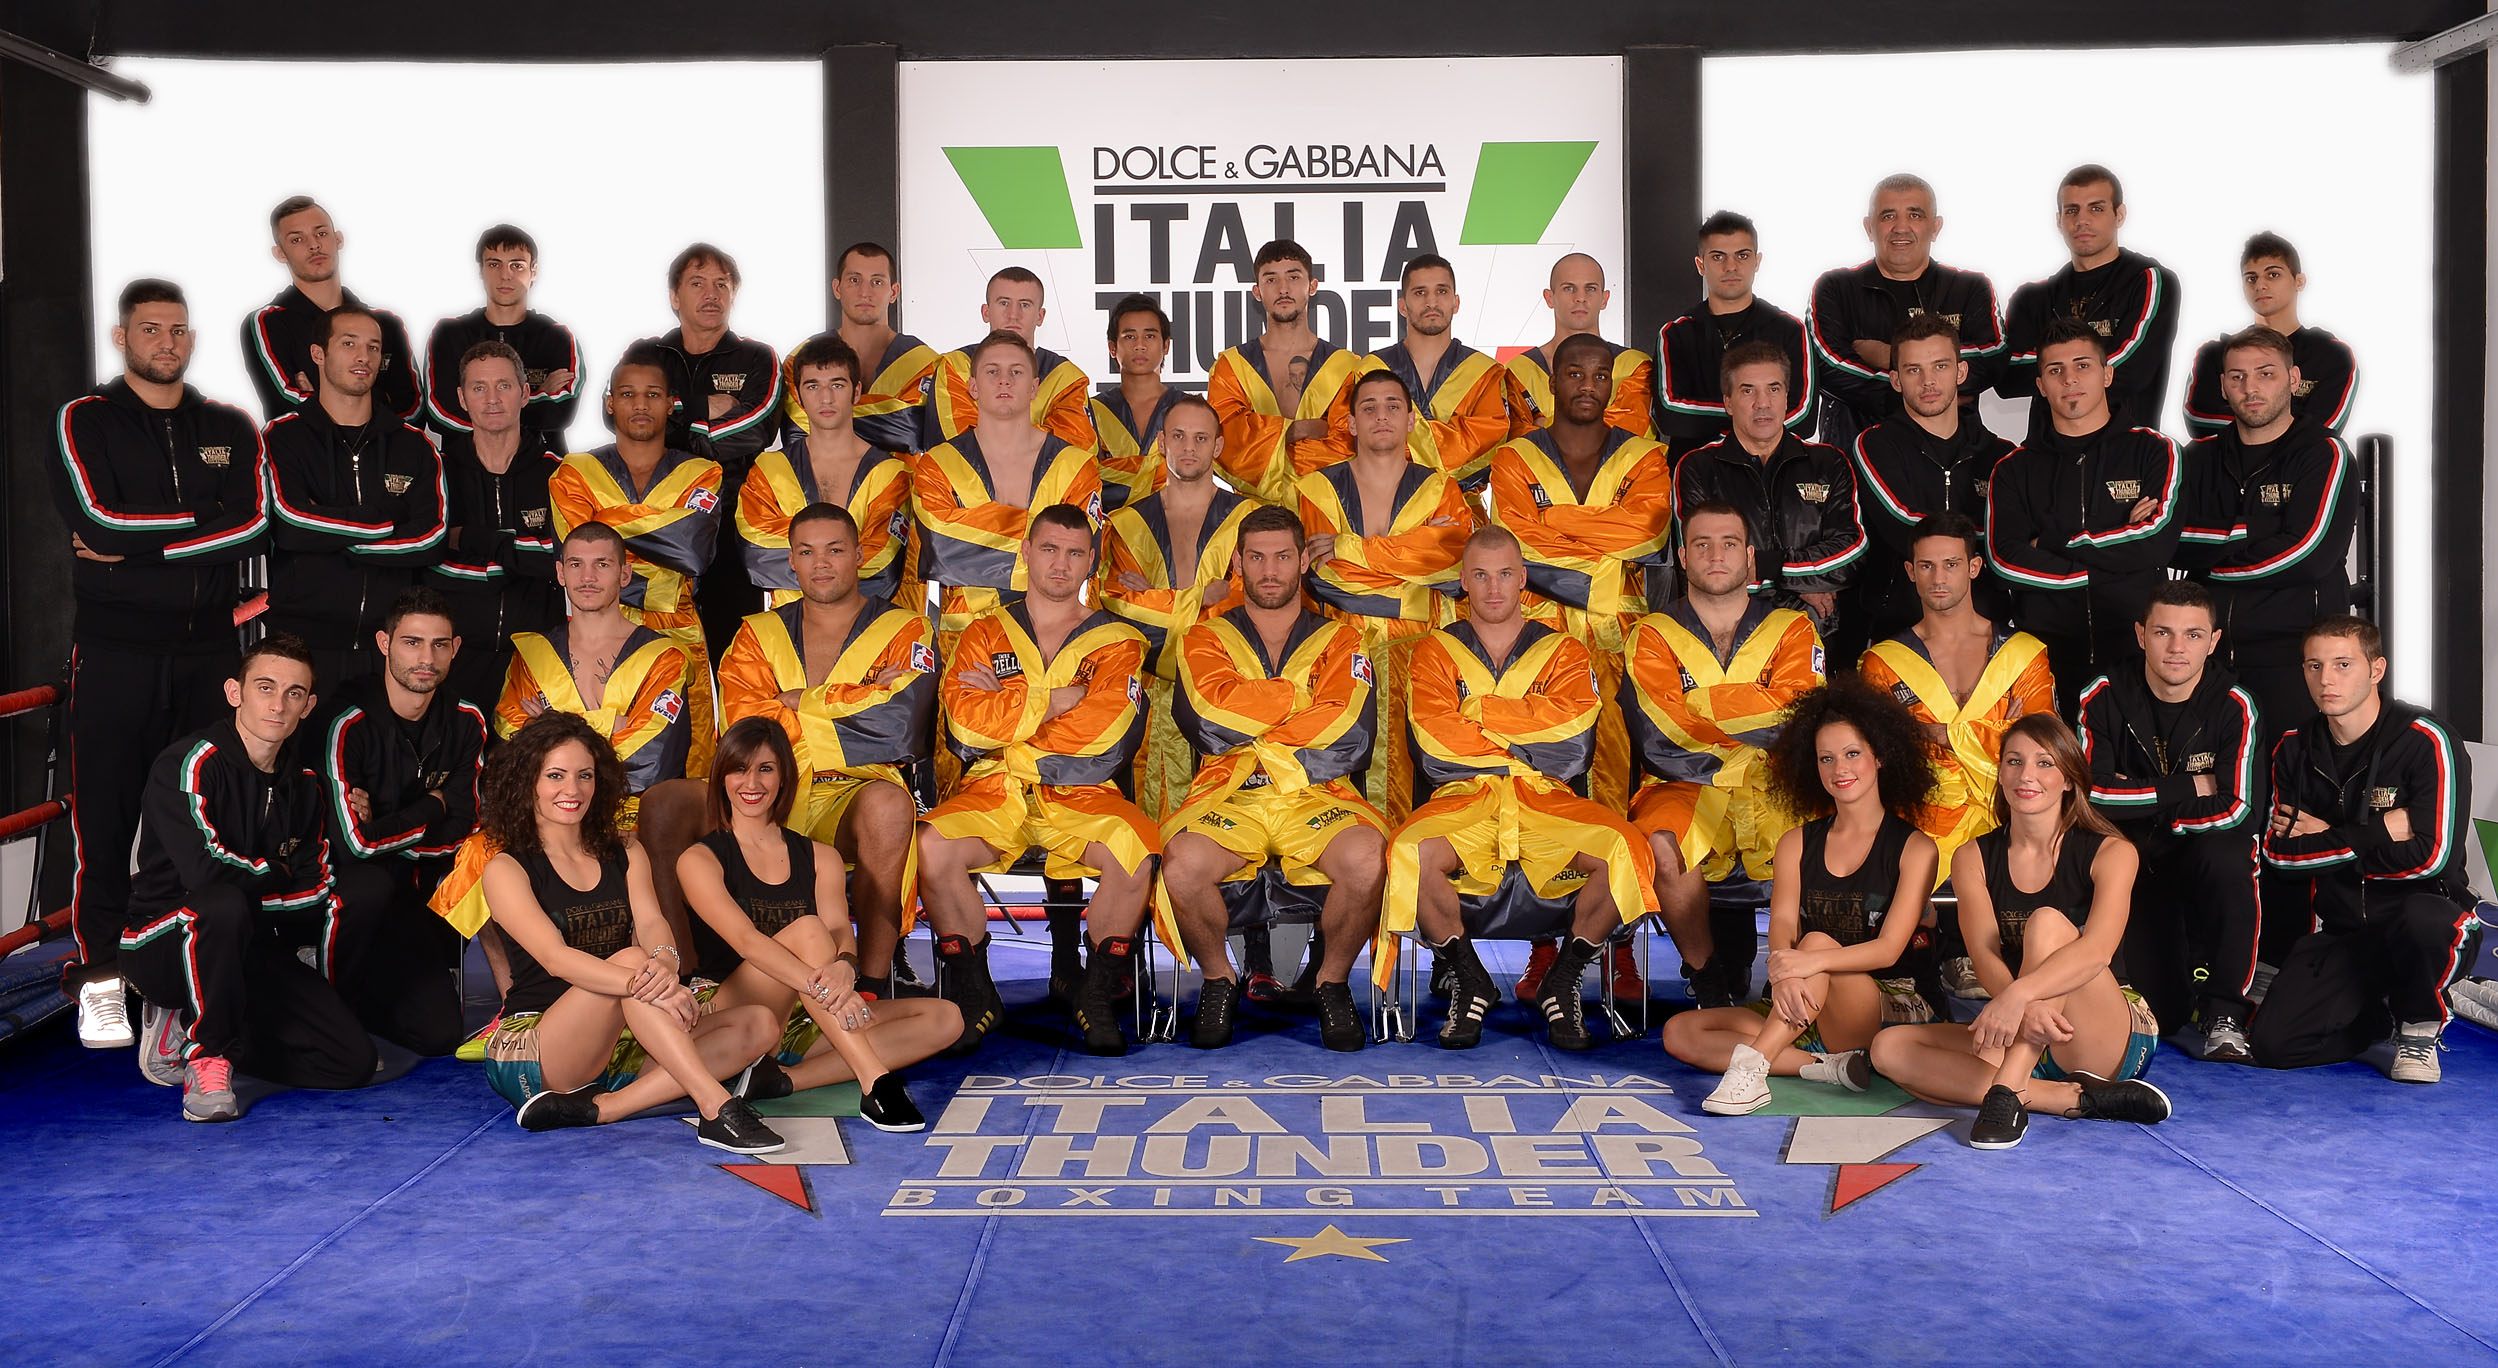 Dolce & Gabbana Italia Thunder Parte la quarta stagione delle World Series of Boxing